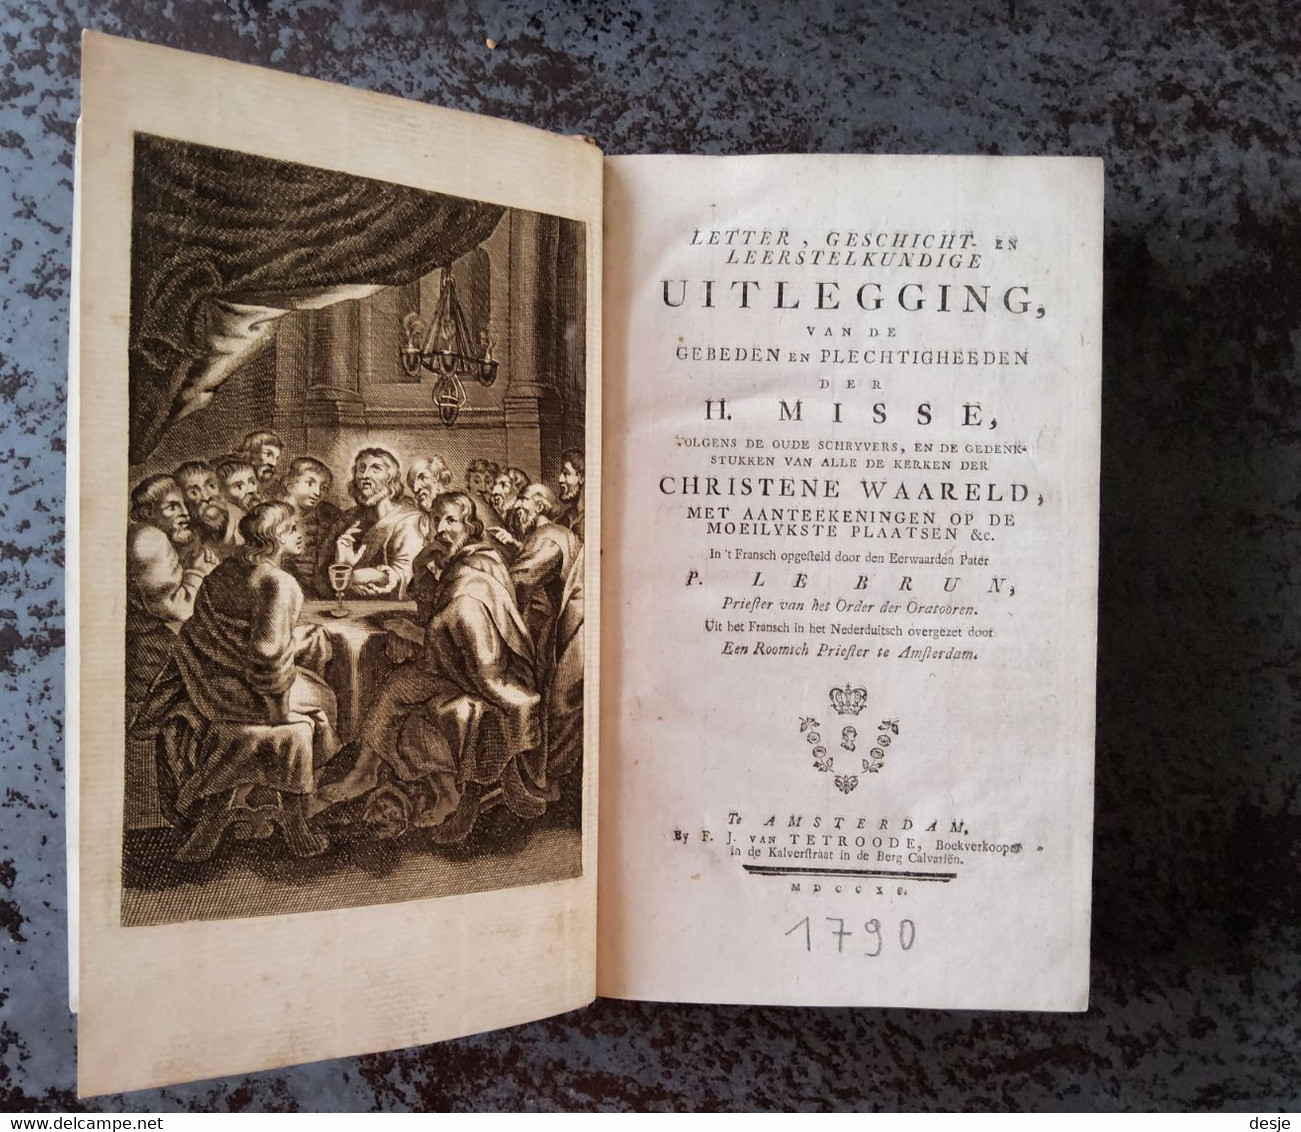 Uitlegging Van De Gebeden En Plechtigheden Der H. Misse Door P. Le Brun, 733 Blz., Amsterdam, 1790 - Vecchi